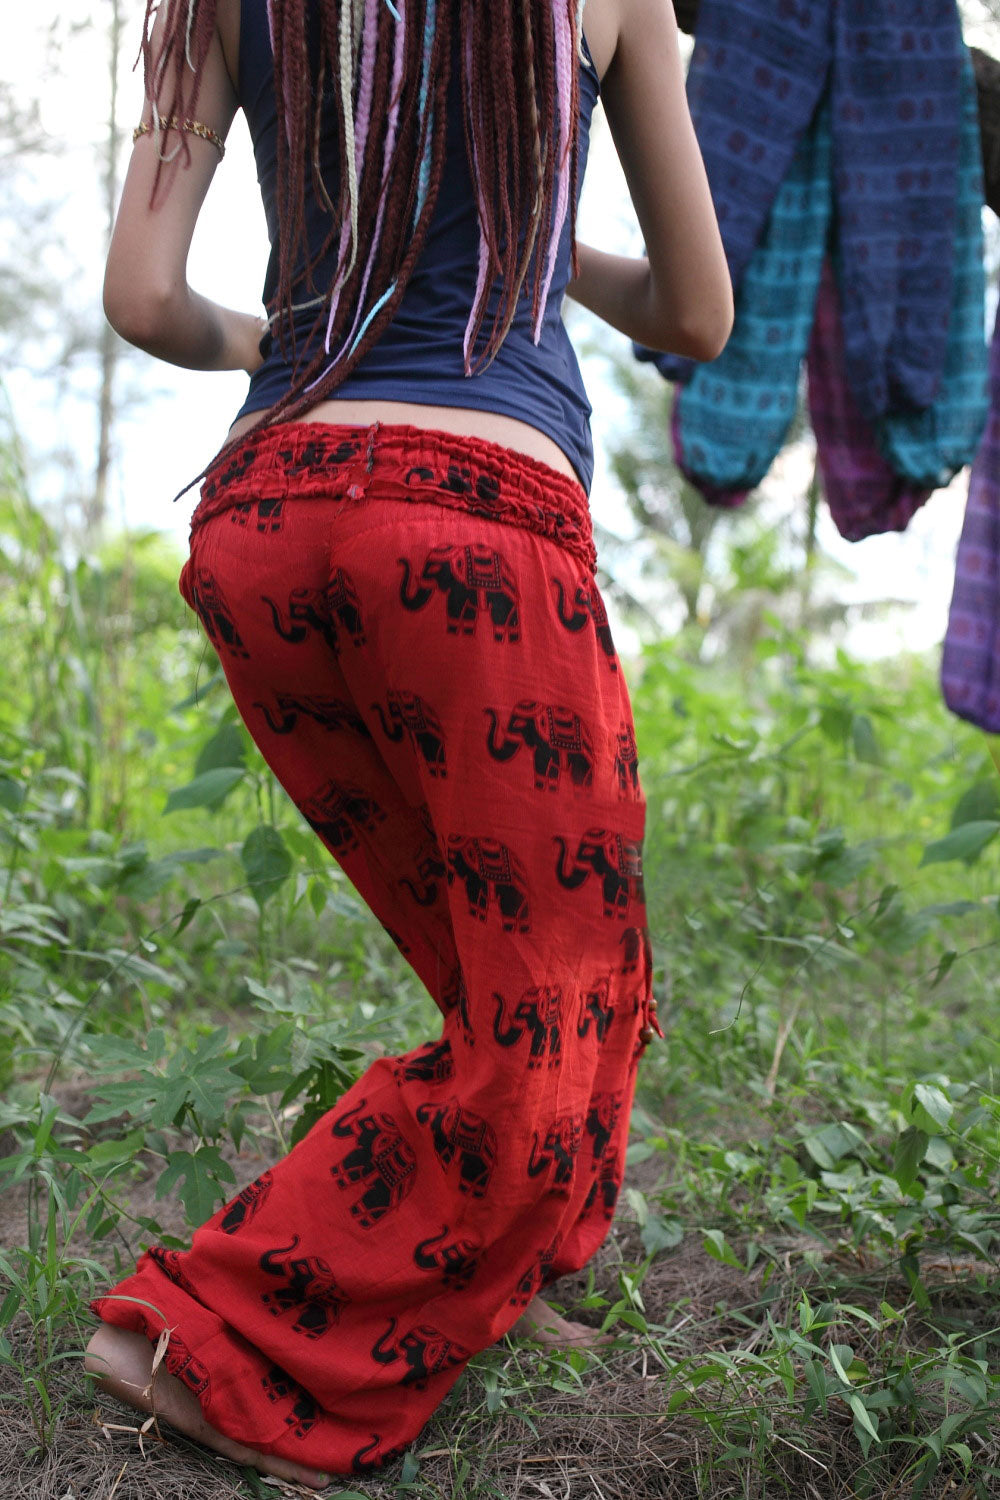 High Crotch Harem Pants - Elephant Print - Red